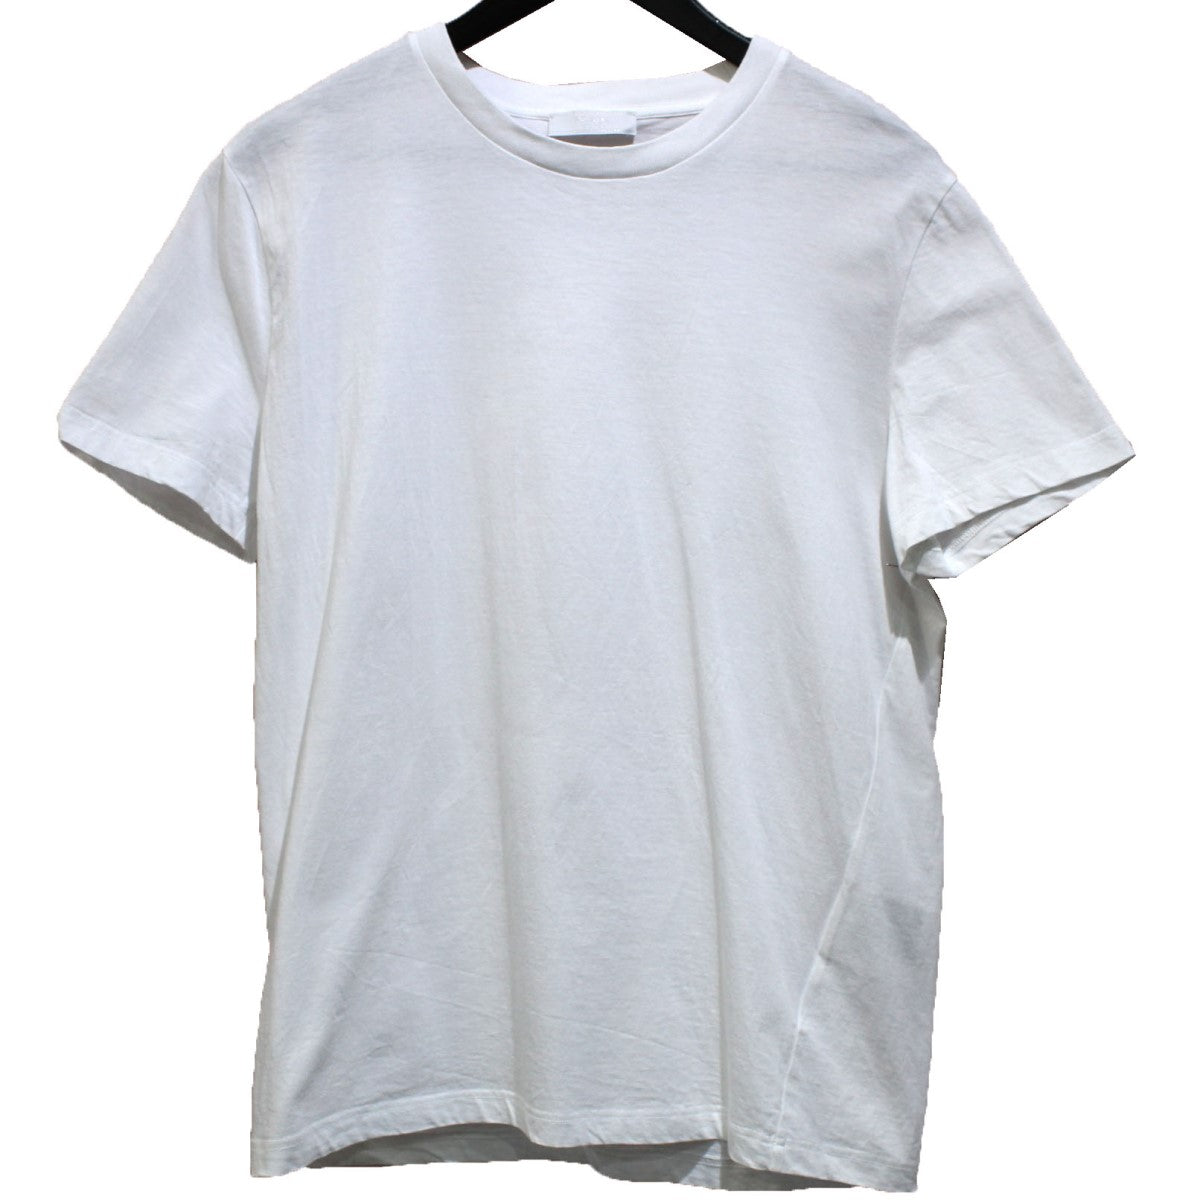 PRADA(プラダ) 3パック コットンジャージー 半袖Tシャツ DNA829 